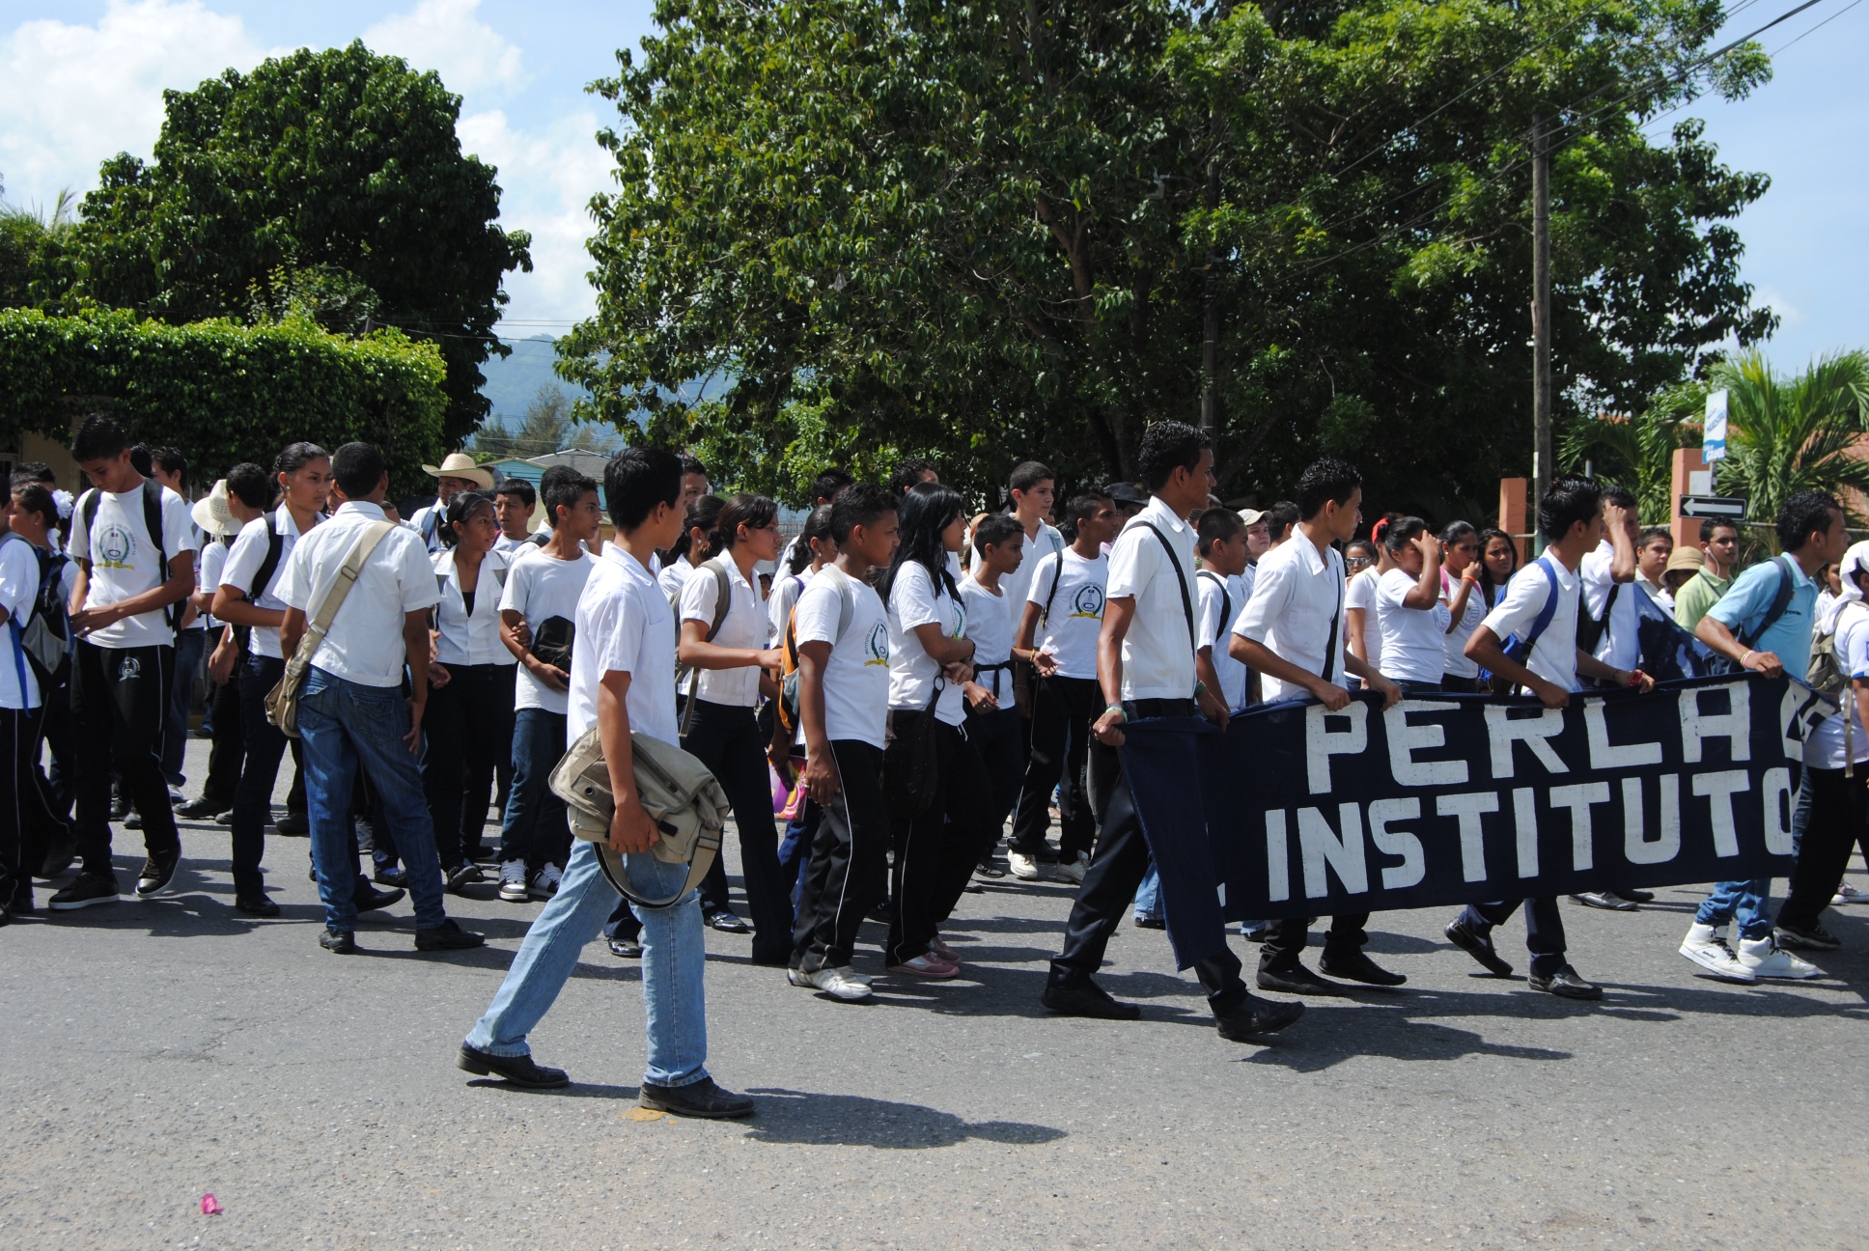 Estudiantes progreseños salen a protestar el Día internacional de la juventud y son recibidos por policías listos para reprimir